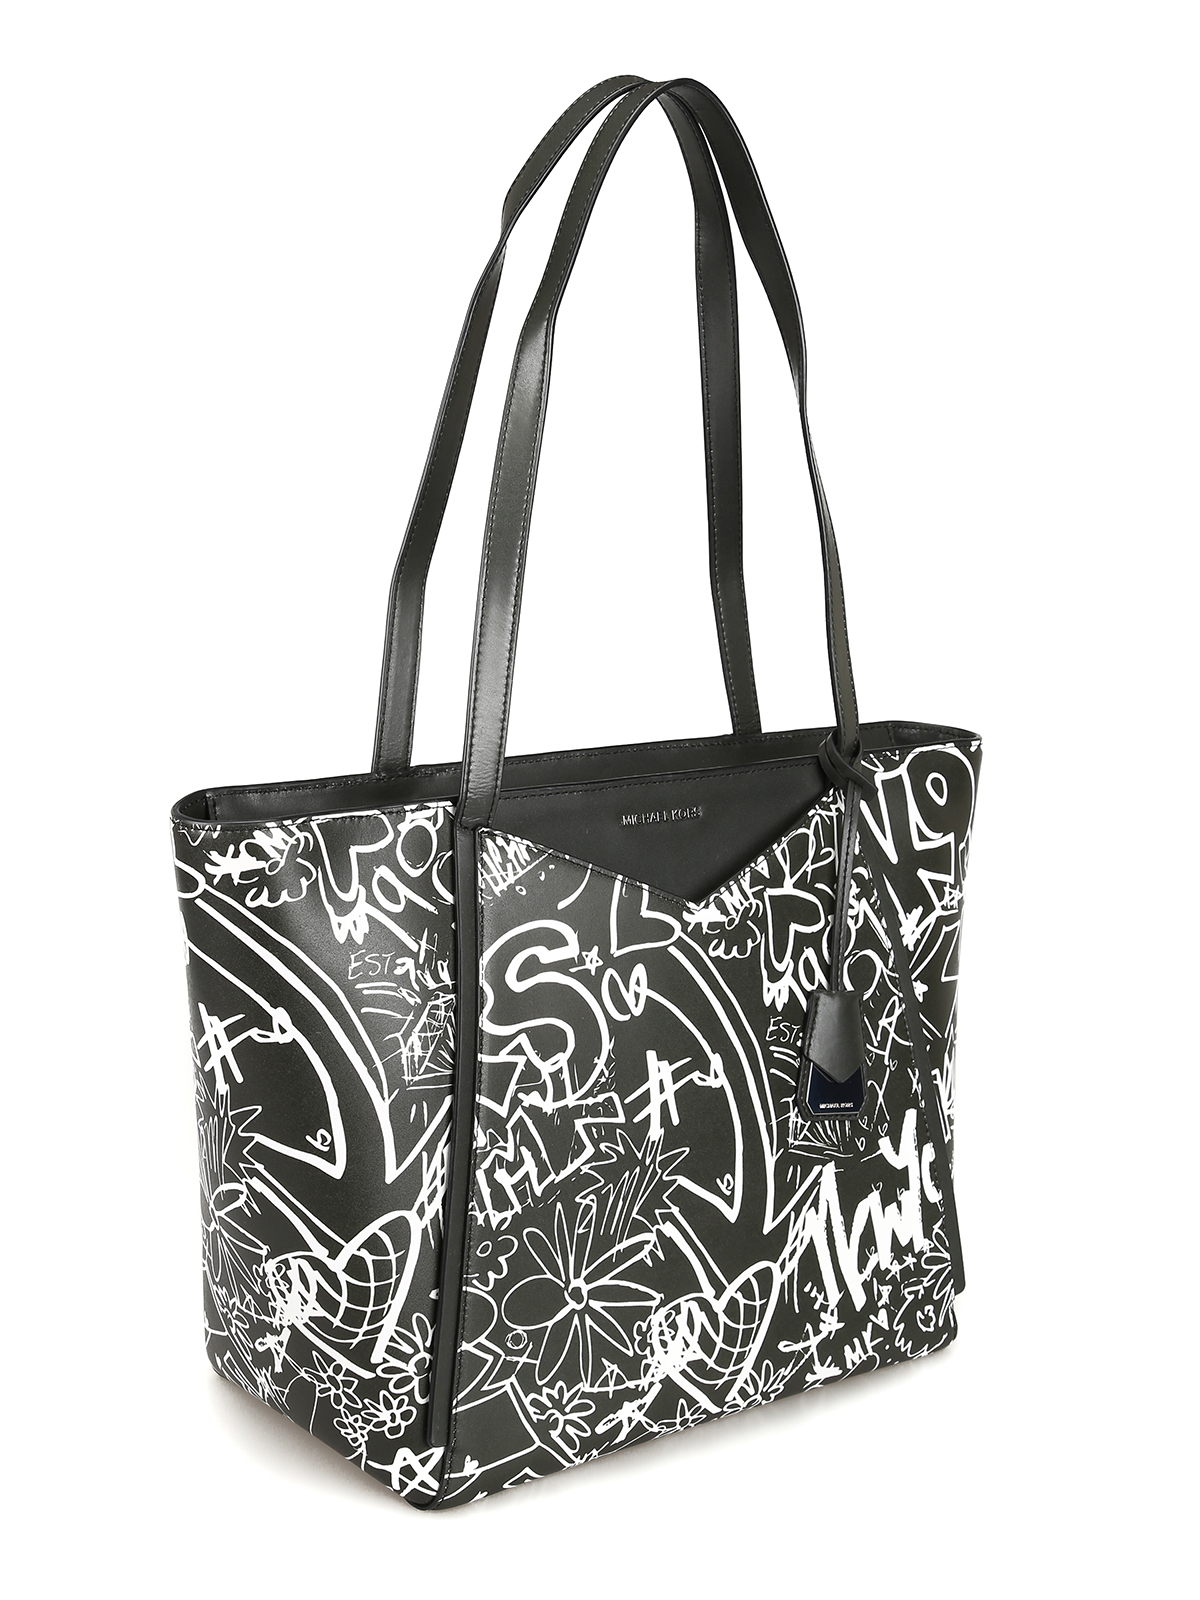 Black Printed Michael Kors Tote Blck Bag